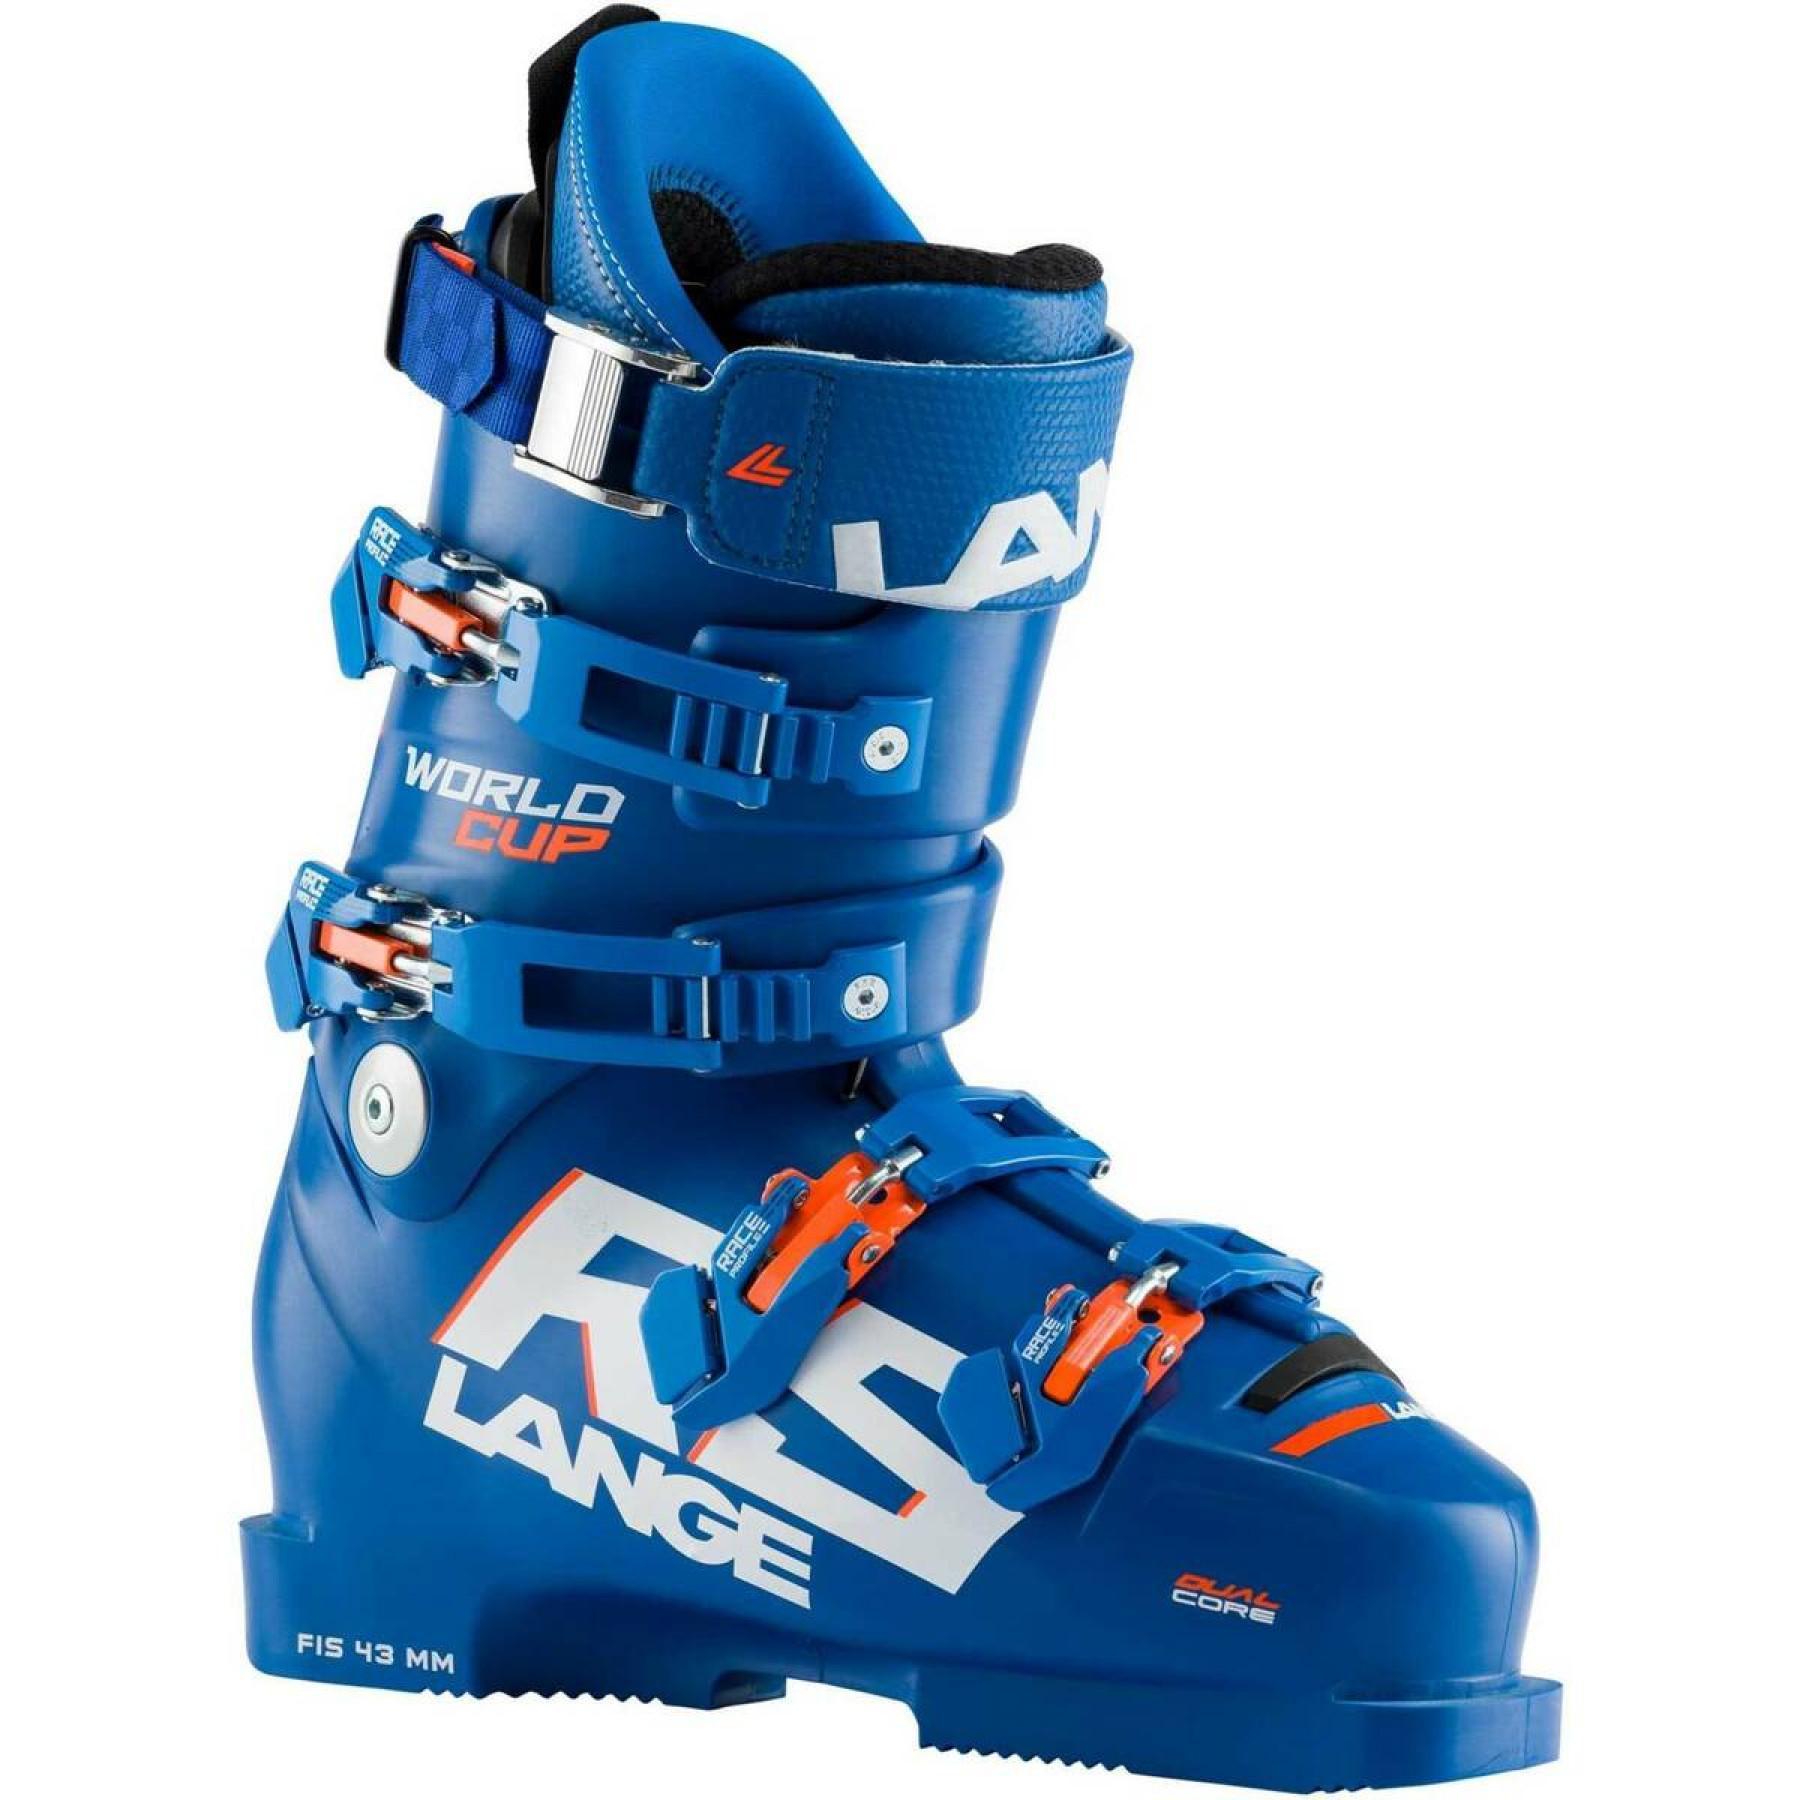 Zapatillas de esquí Lange world cup rs zc